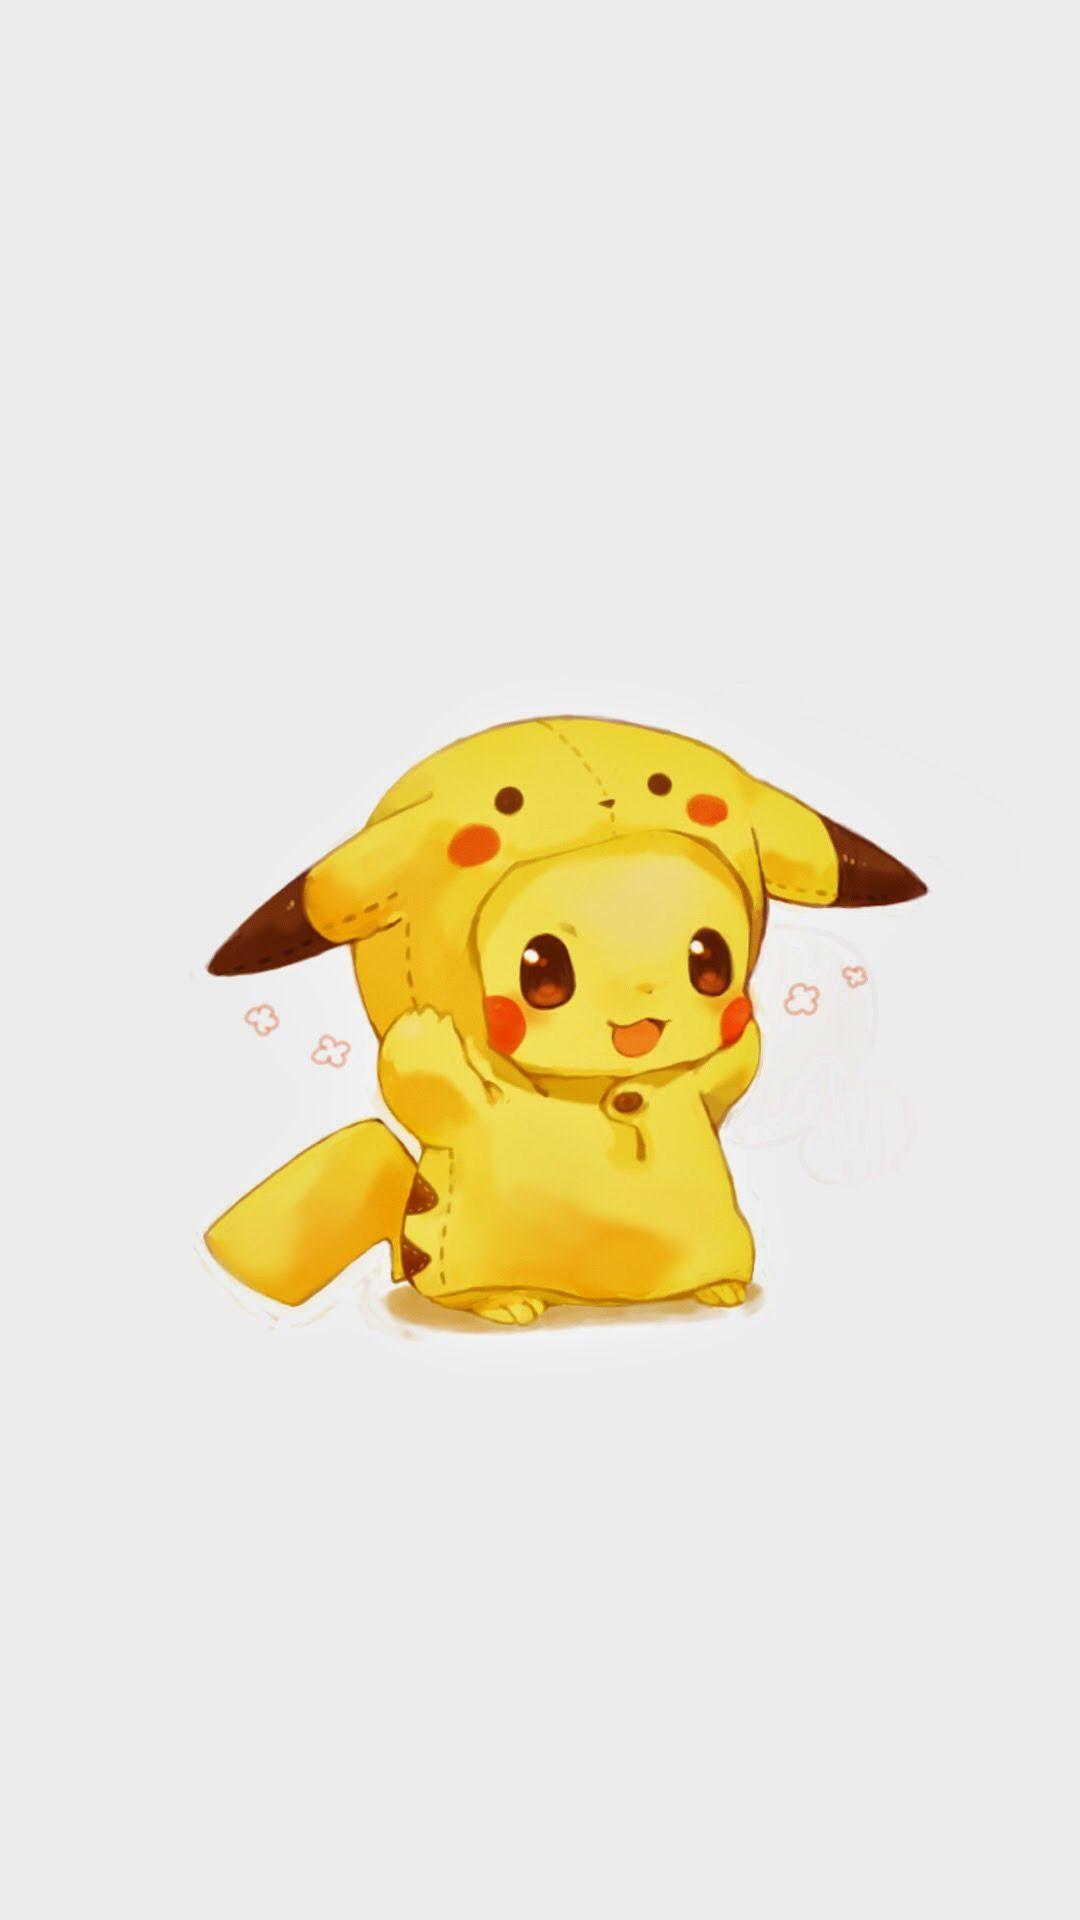 cute pikachu background